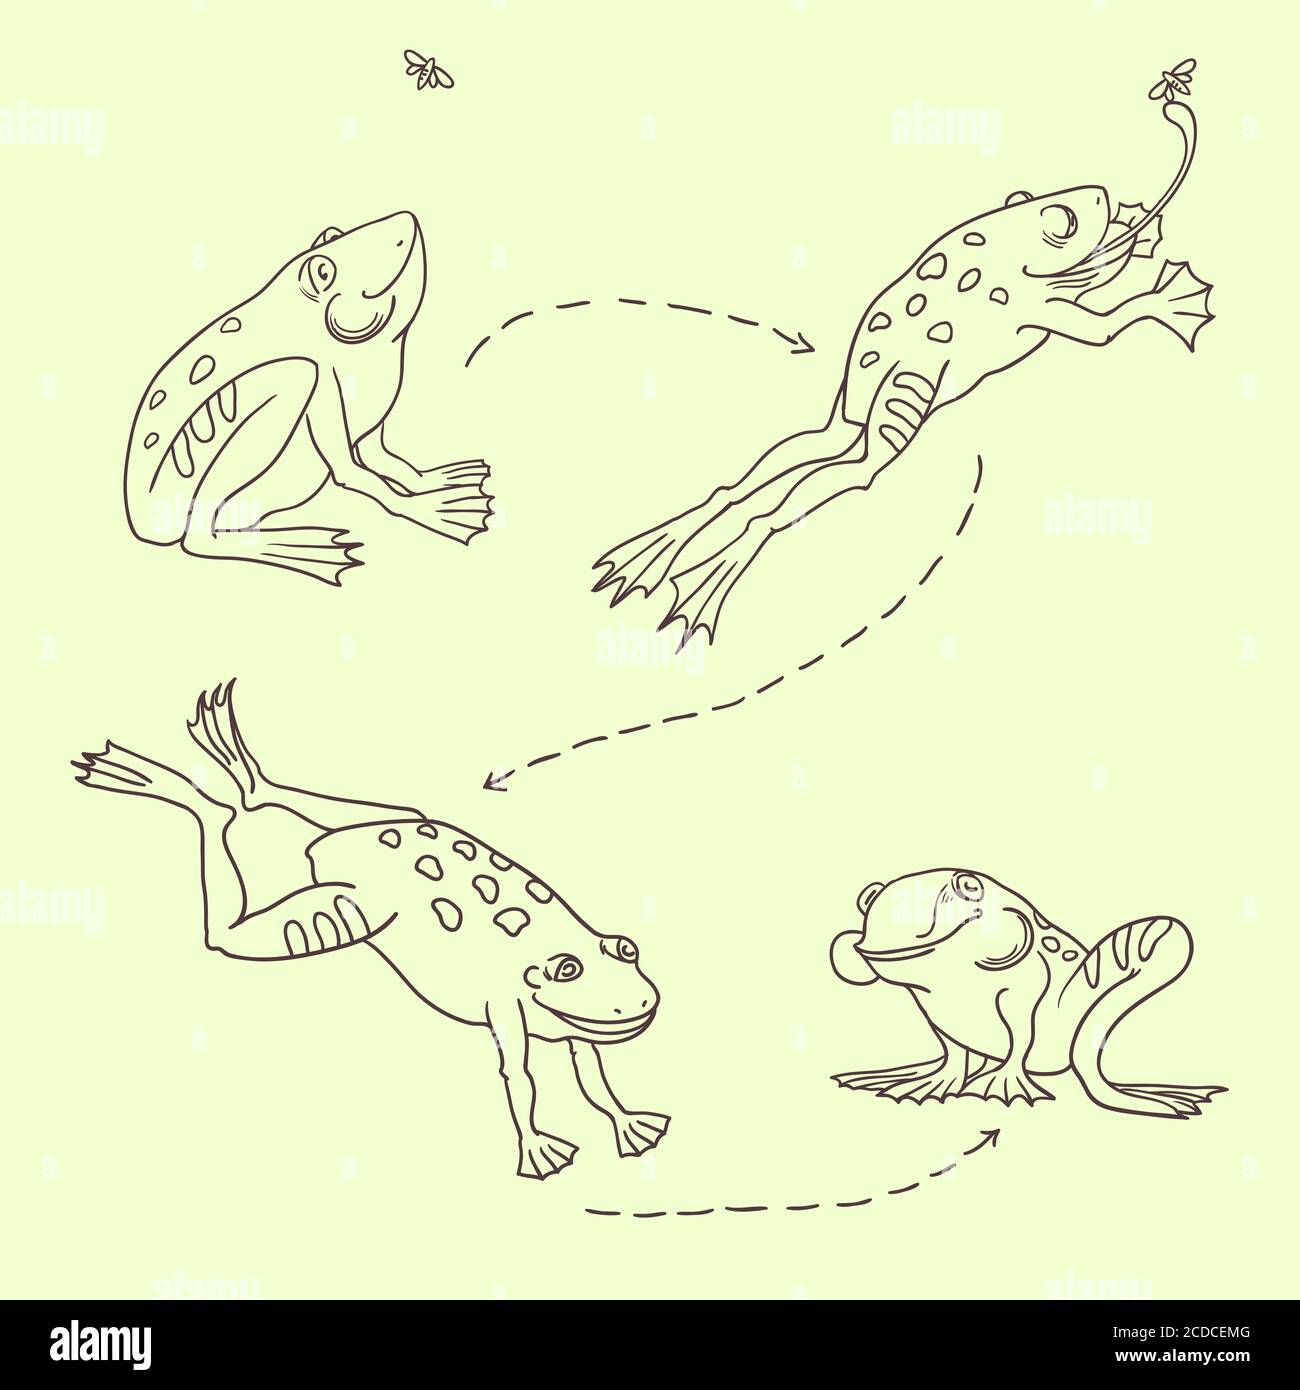 Ensemble de grenouilles mignonnes sautant et attrapant une mouche Illustration de Vecteur